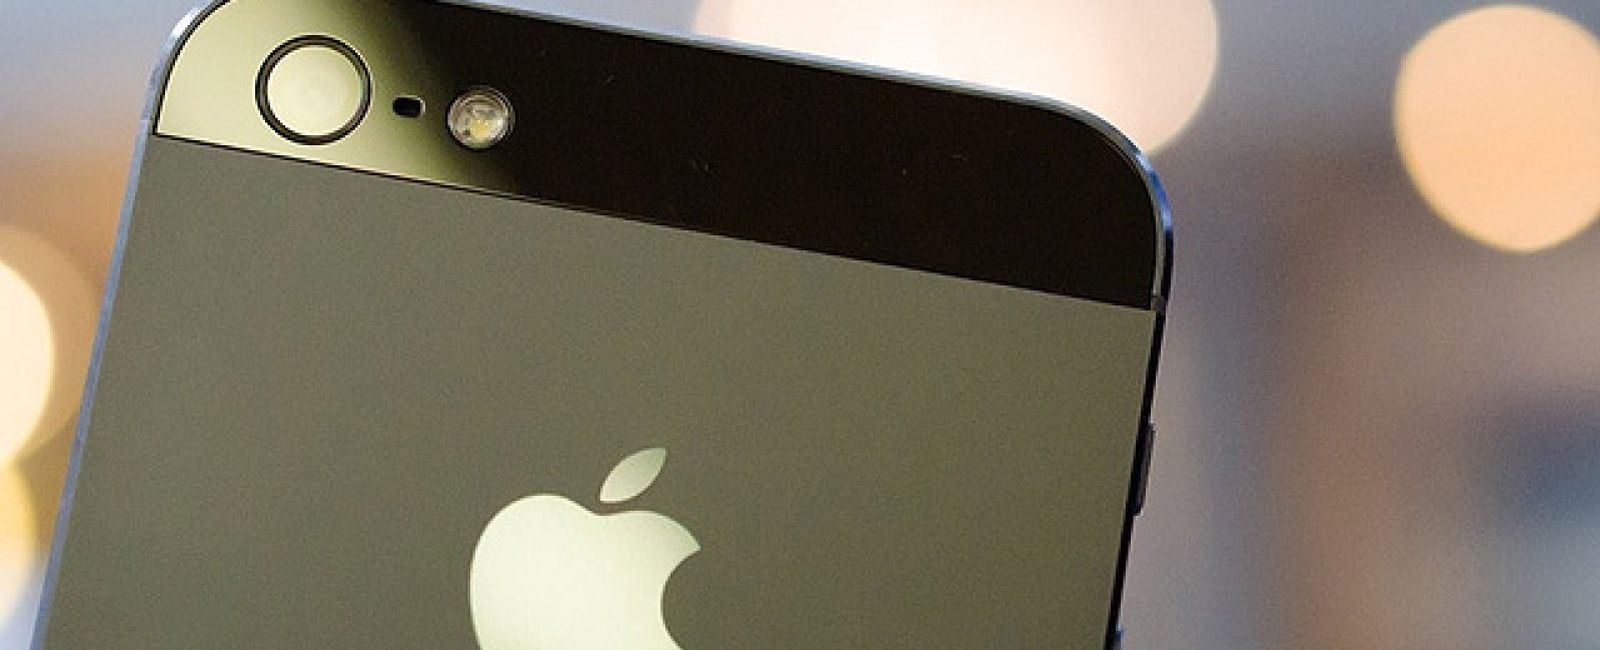 Foto: ¿Problemas con la batería o pantalla de tu iPhone 5? Aprende a cambiarlas